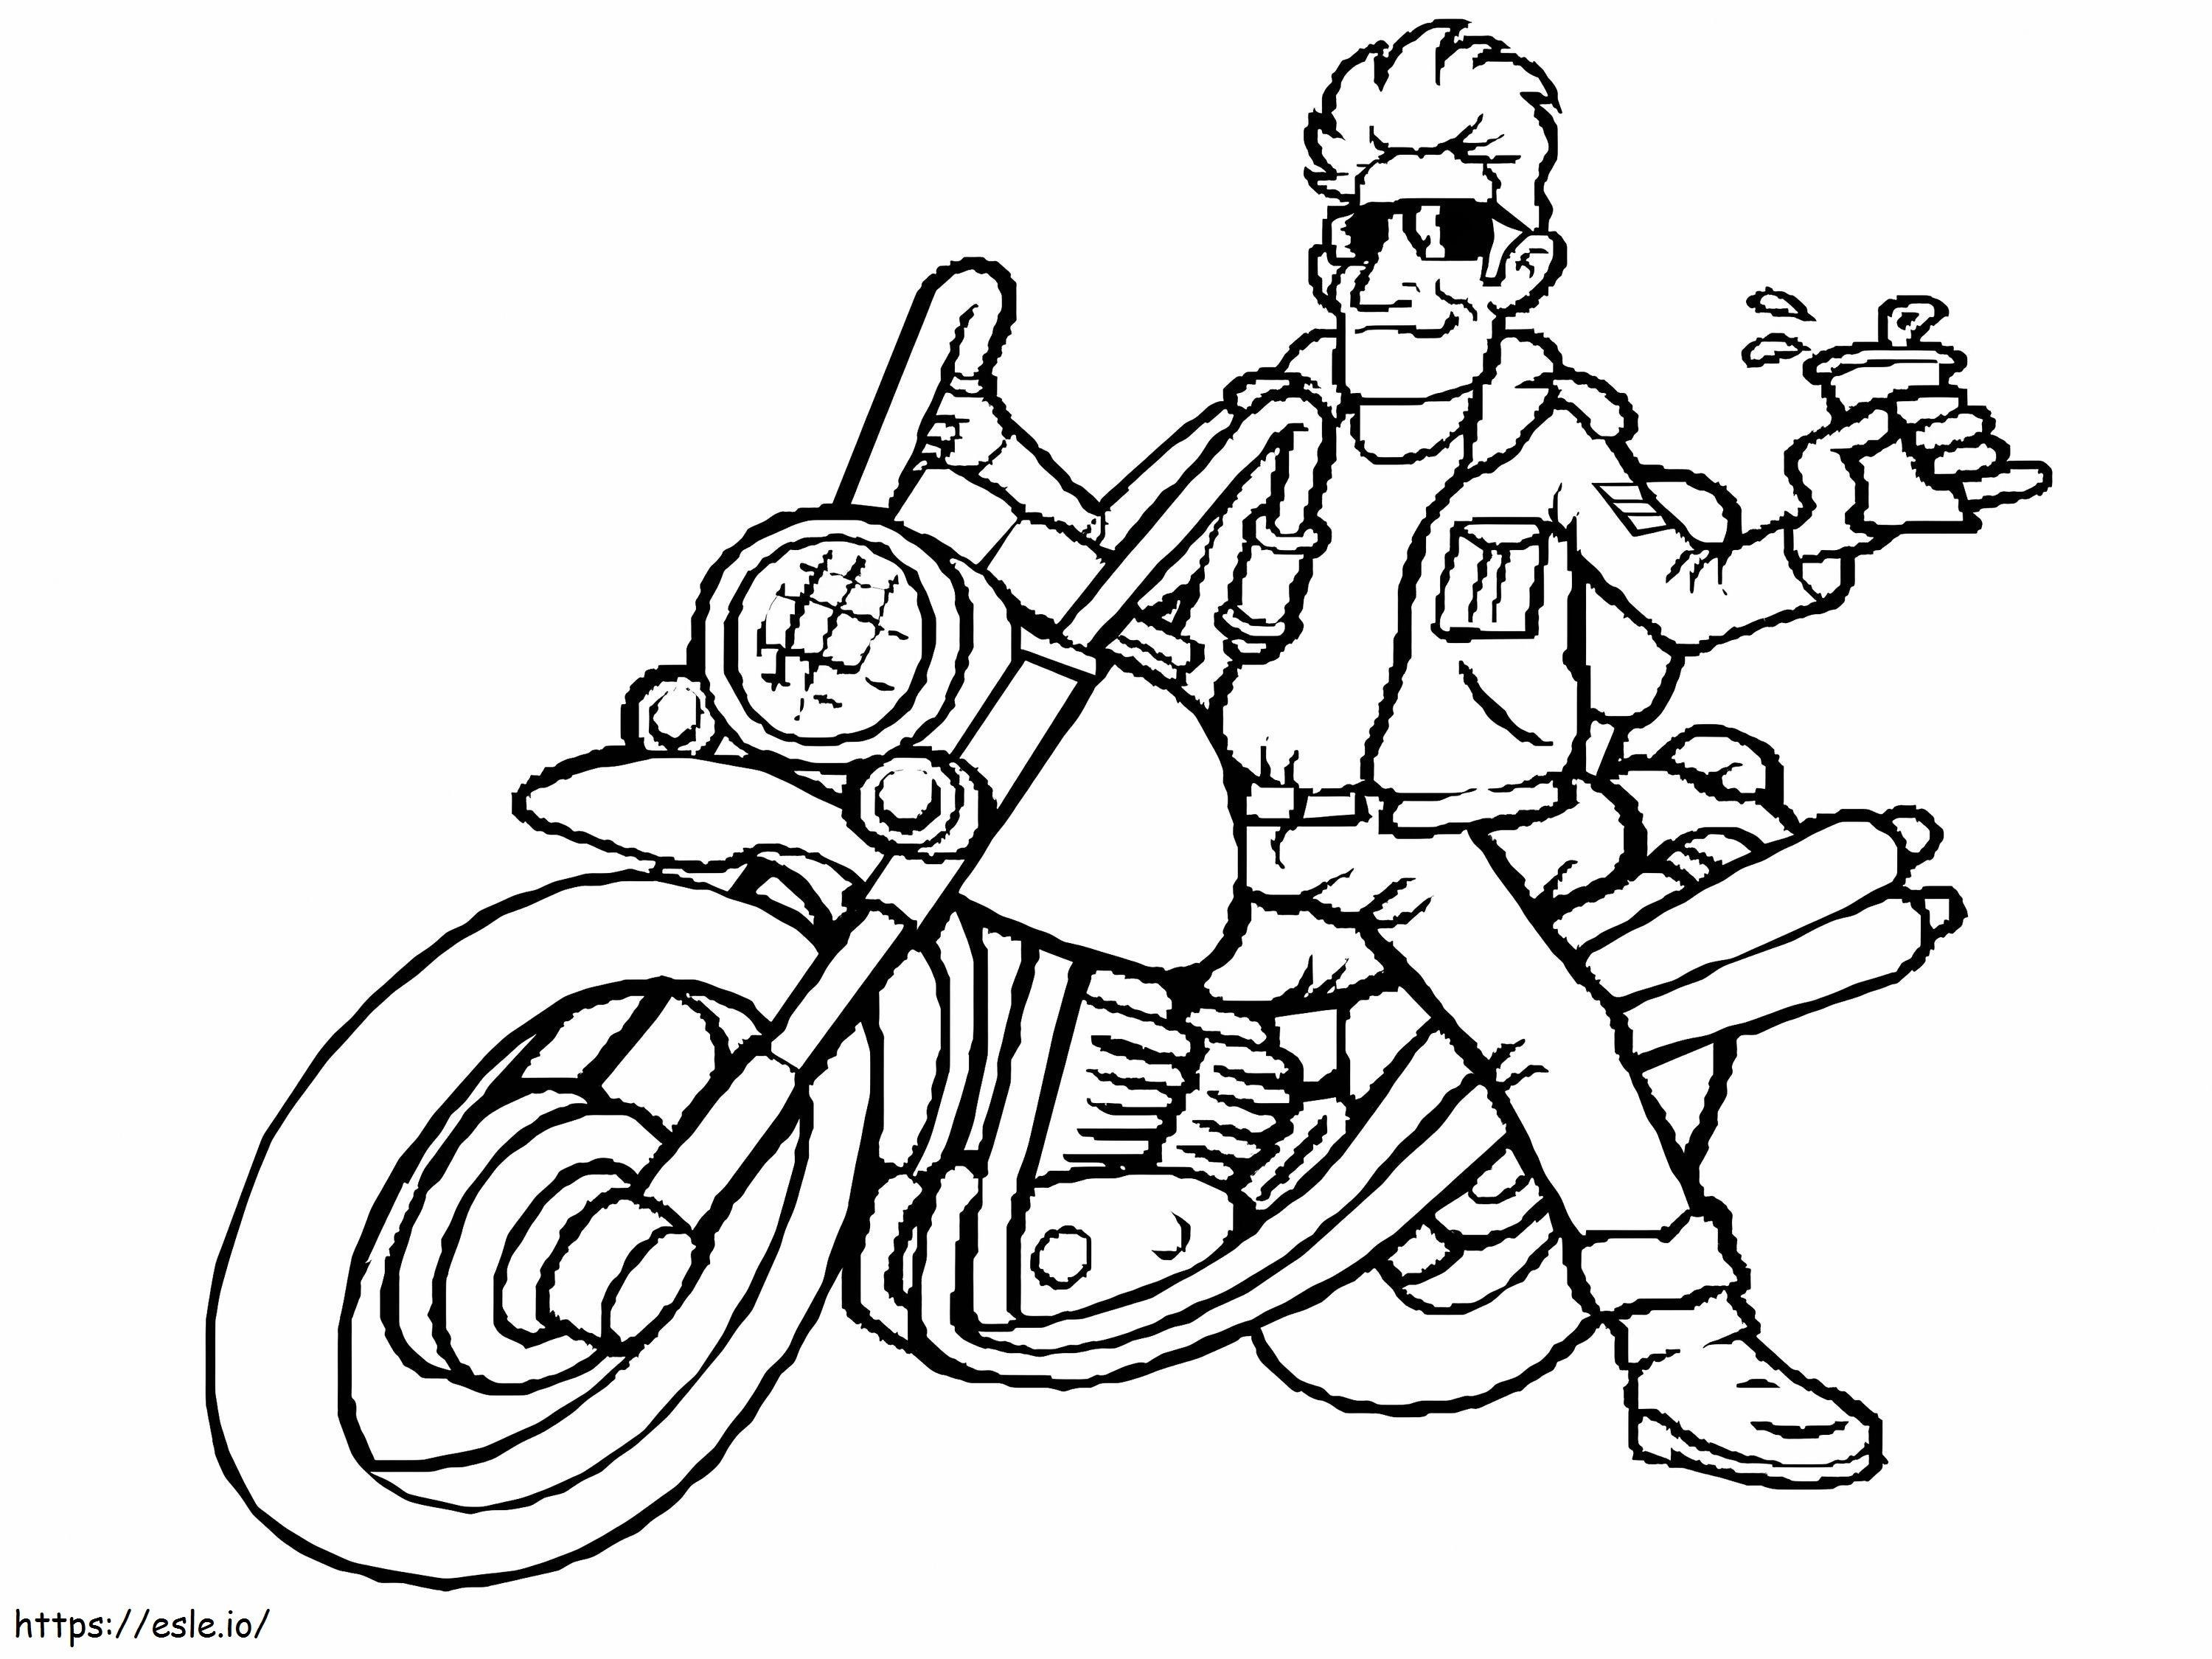 Cool Guy con su motocicleta para colorear